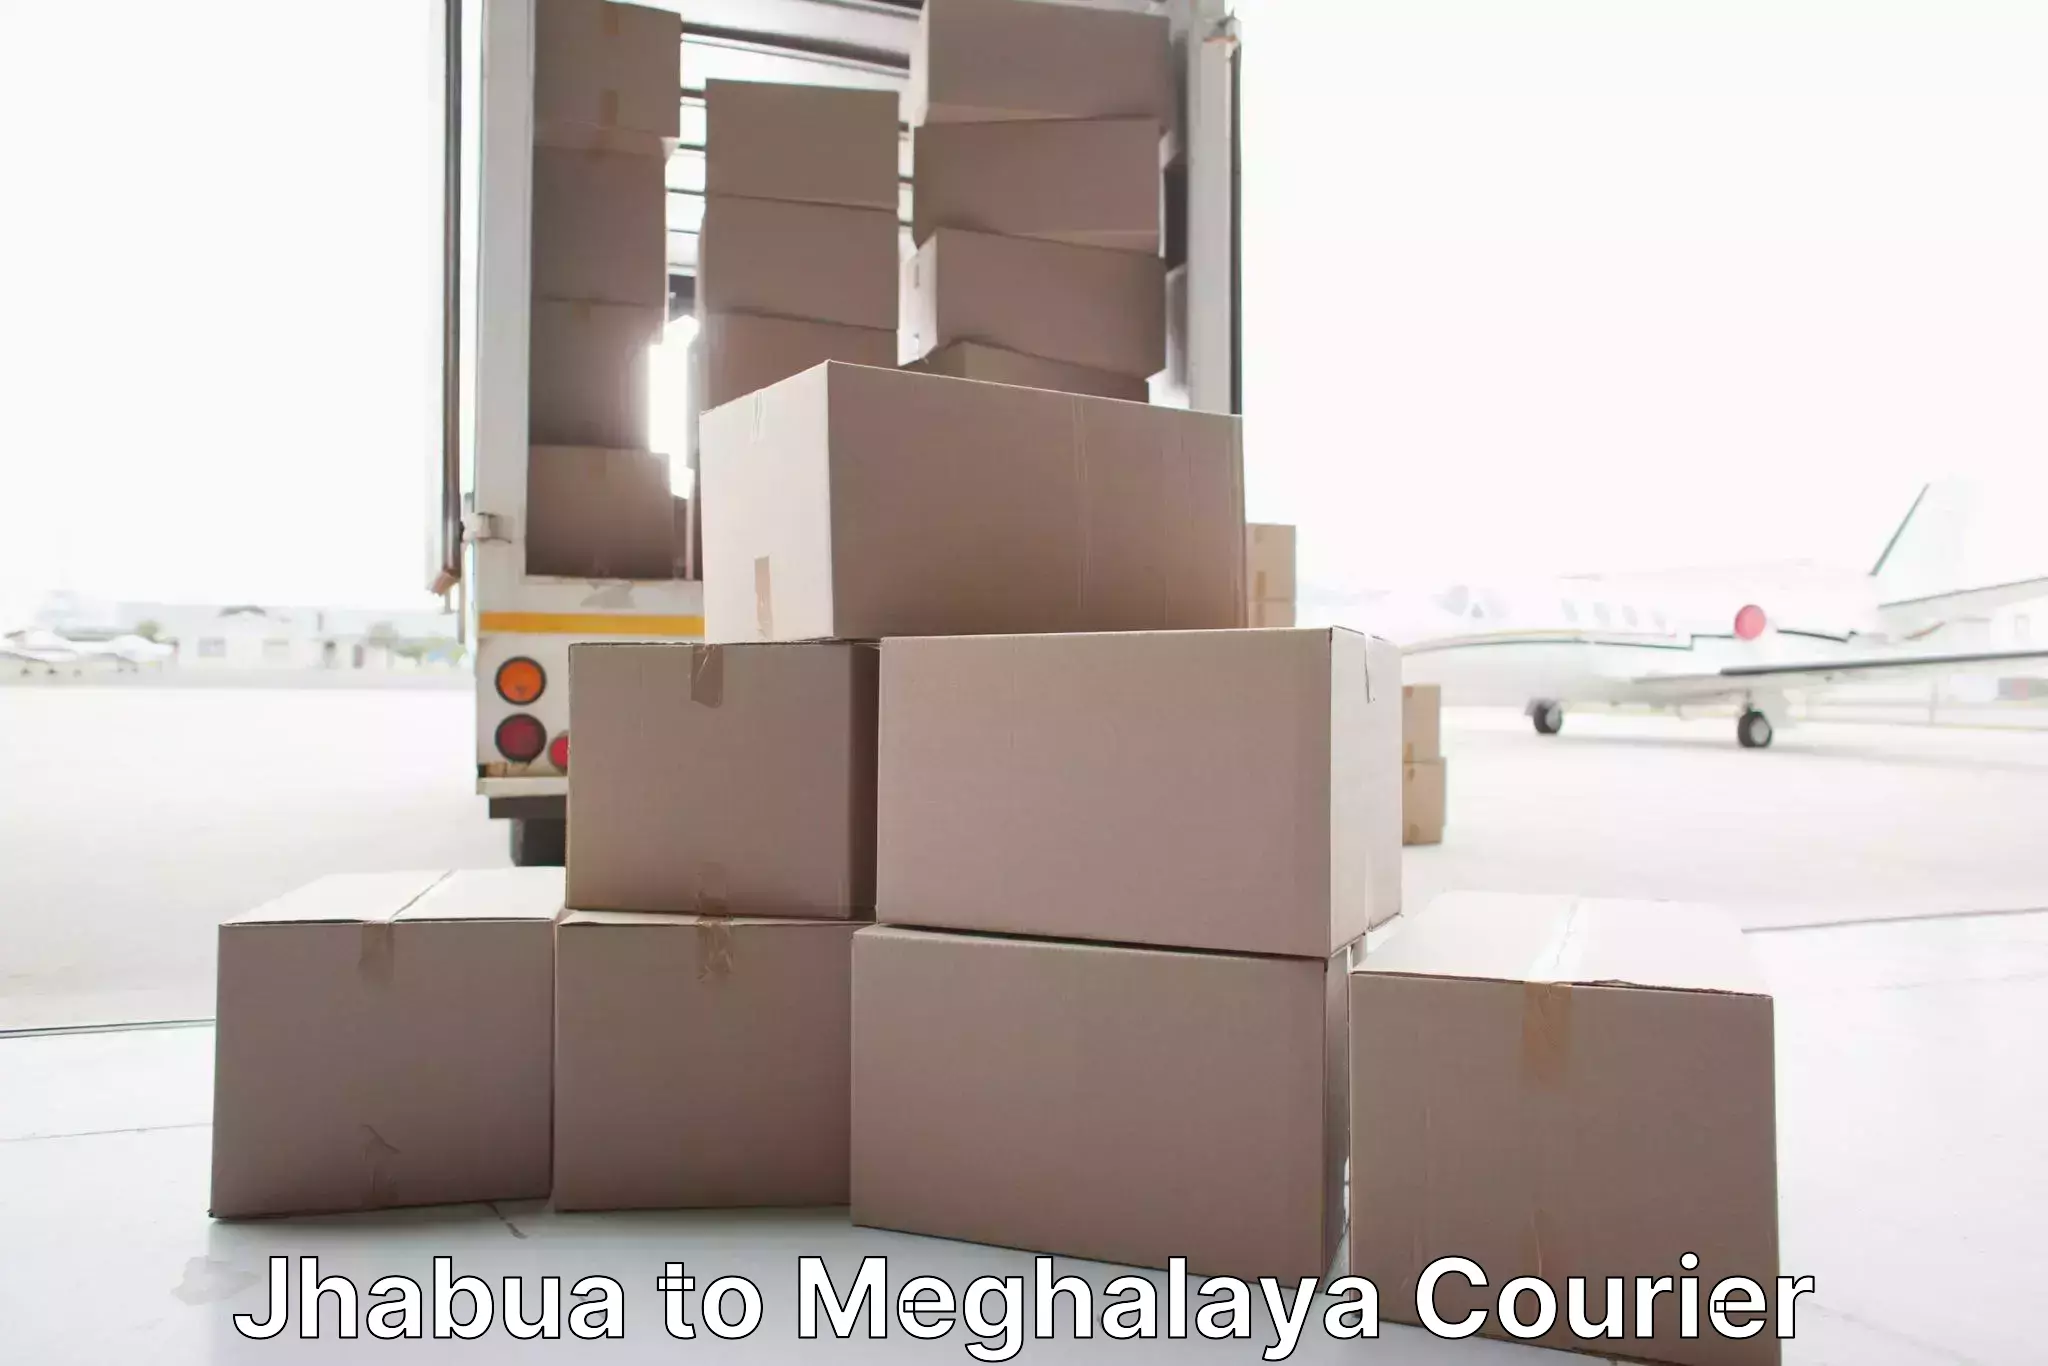 Specialized moving company in Jhabua to Jowai